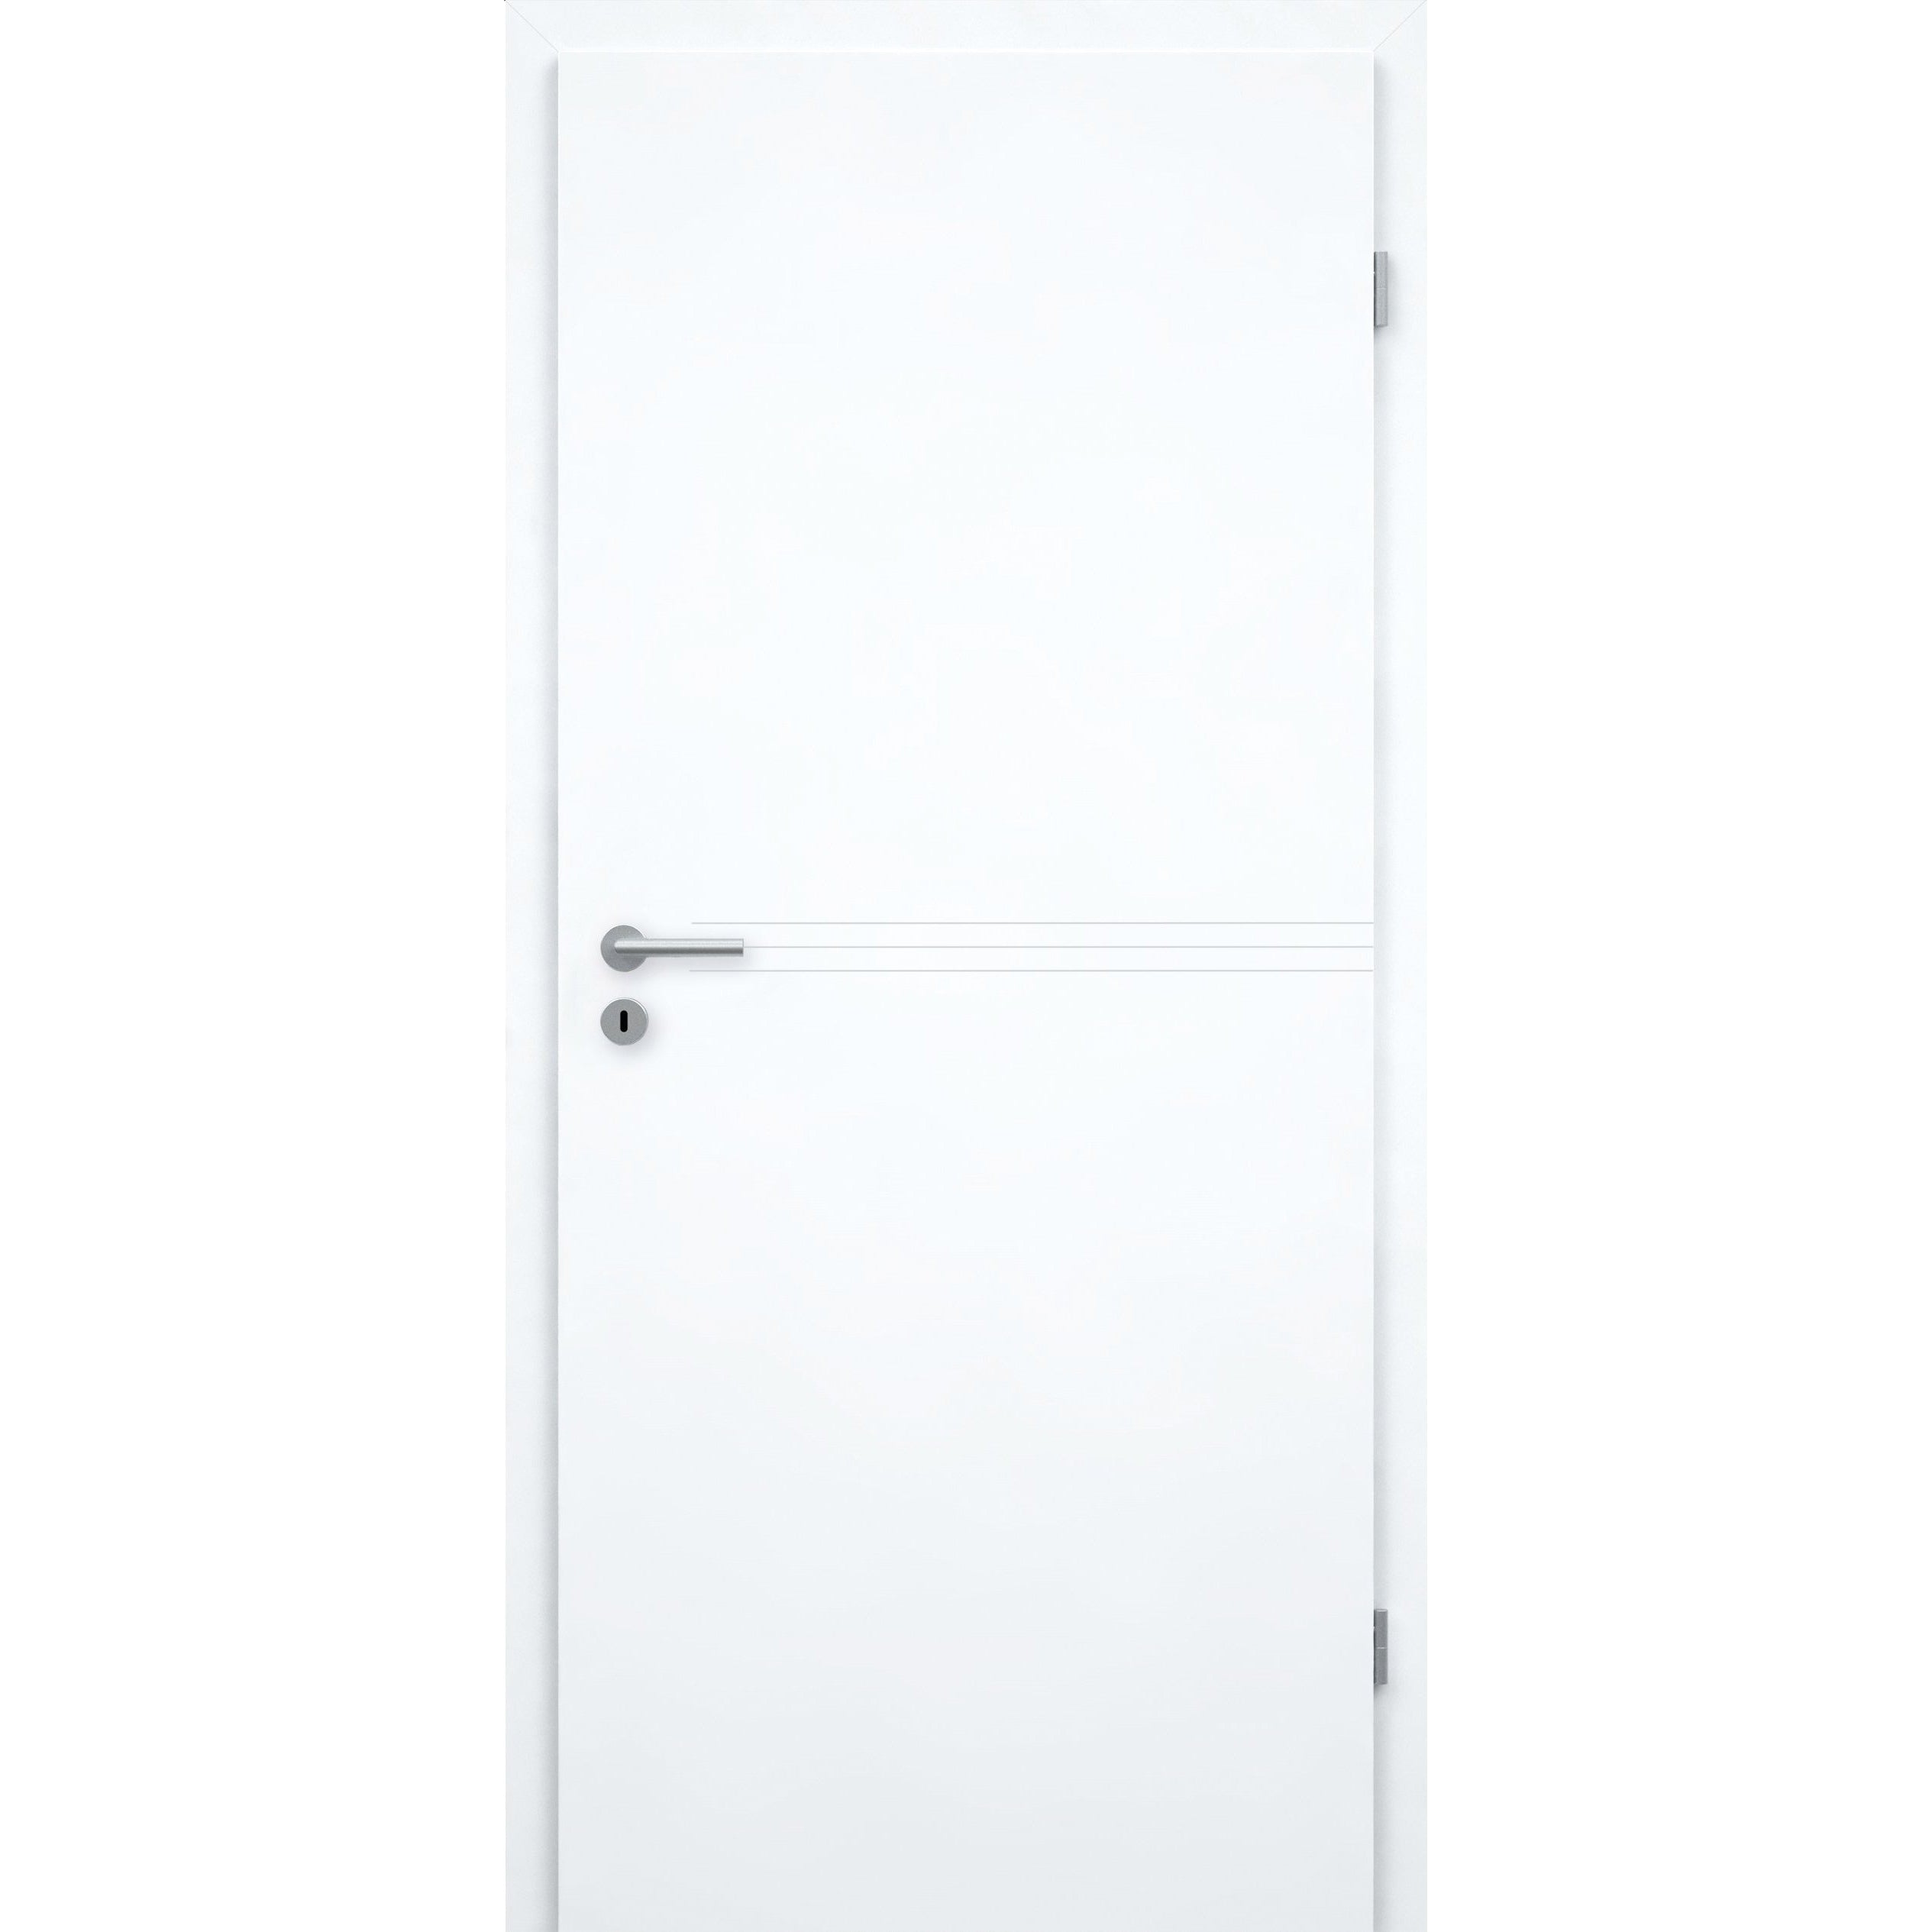 Zimmertür mit Zarge brillant-weiß 3 Rillen Designkante - Modell Designtür Q33